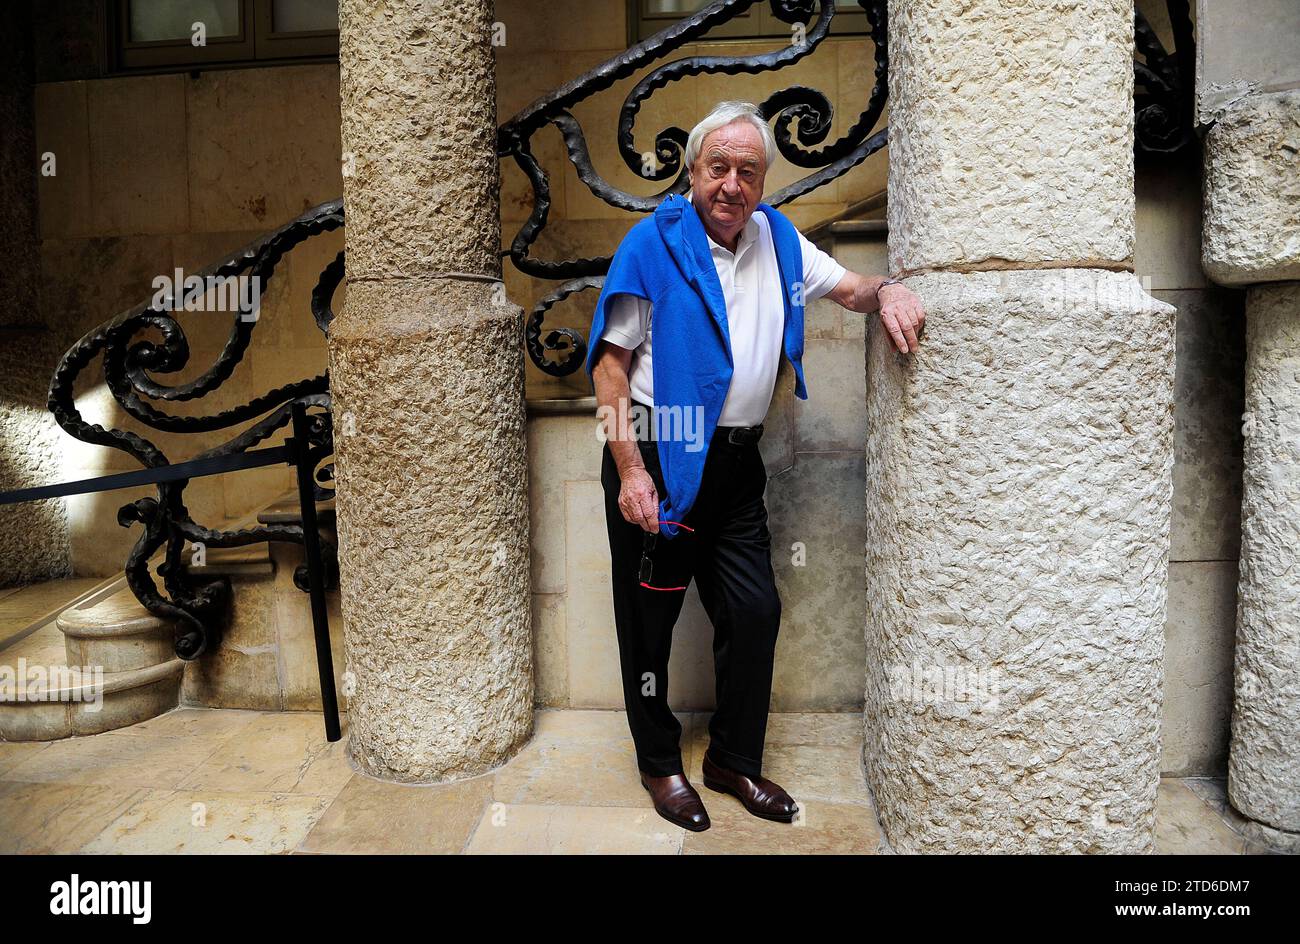 Barcelona. 09/29/2014. Interview mit dem niederländischen Schriftsteller Cees Nooteboom. Fotos Ines Baucells. Archdc. Quelle: Album / Archivo ABC / Inés Baucells Stockfoto